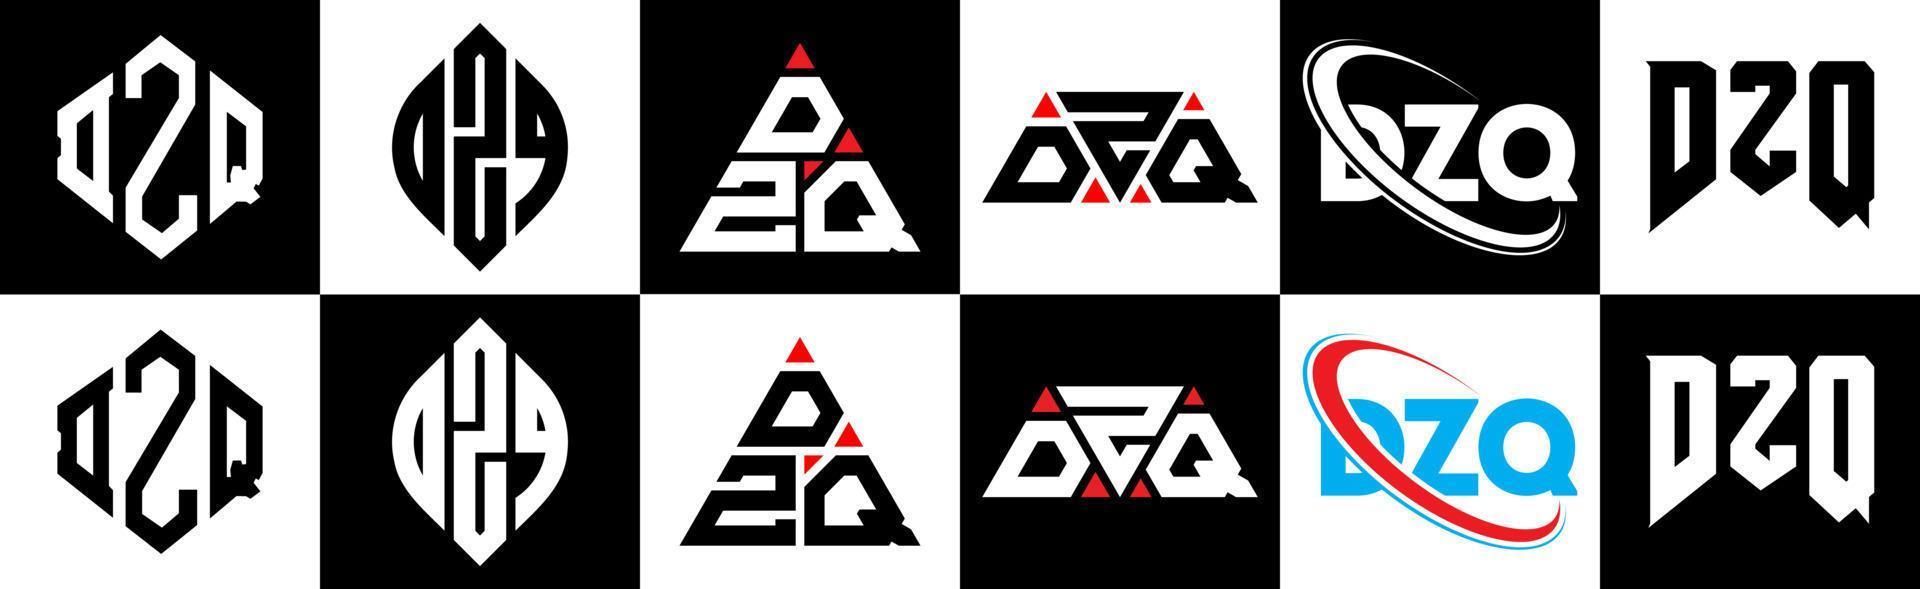 dzq-Buchstaben-Logo-Design in sechs Stilen. dzq Polygon, Kreis, Dreieck, Sechseck, flacher und einfacher Stil mit schwarz-weißem Buchstabenlogo in einer Zeichenfläche. dzq minimalistisches und klassisches Logo vektor